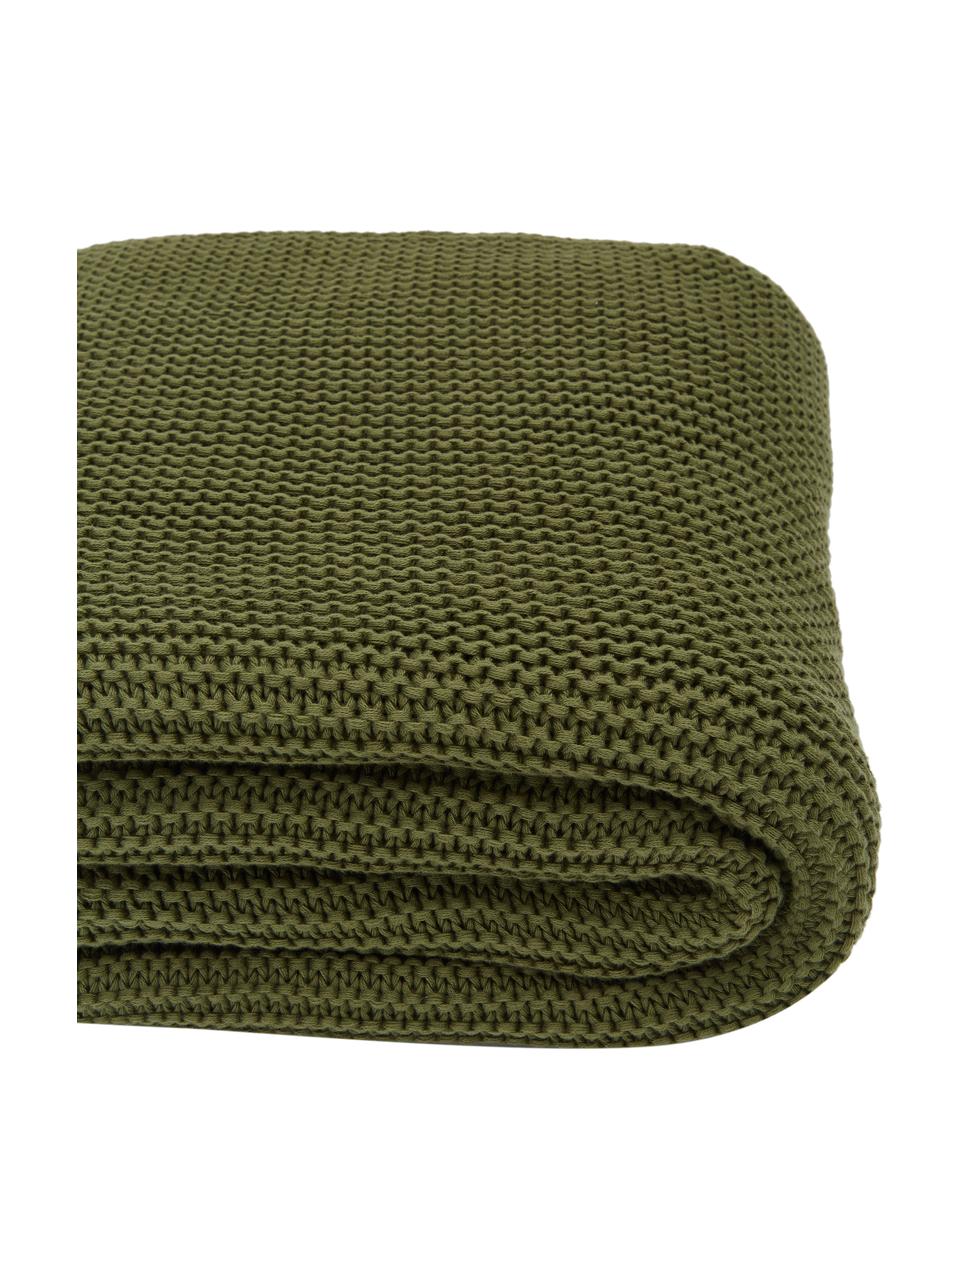 Coperta a maglia in cotone biologico verde Adalyn, 100% cotone biologico, certificato GOTS, Verde, Larg. 150 x Lung. 200 cm